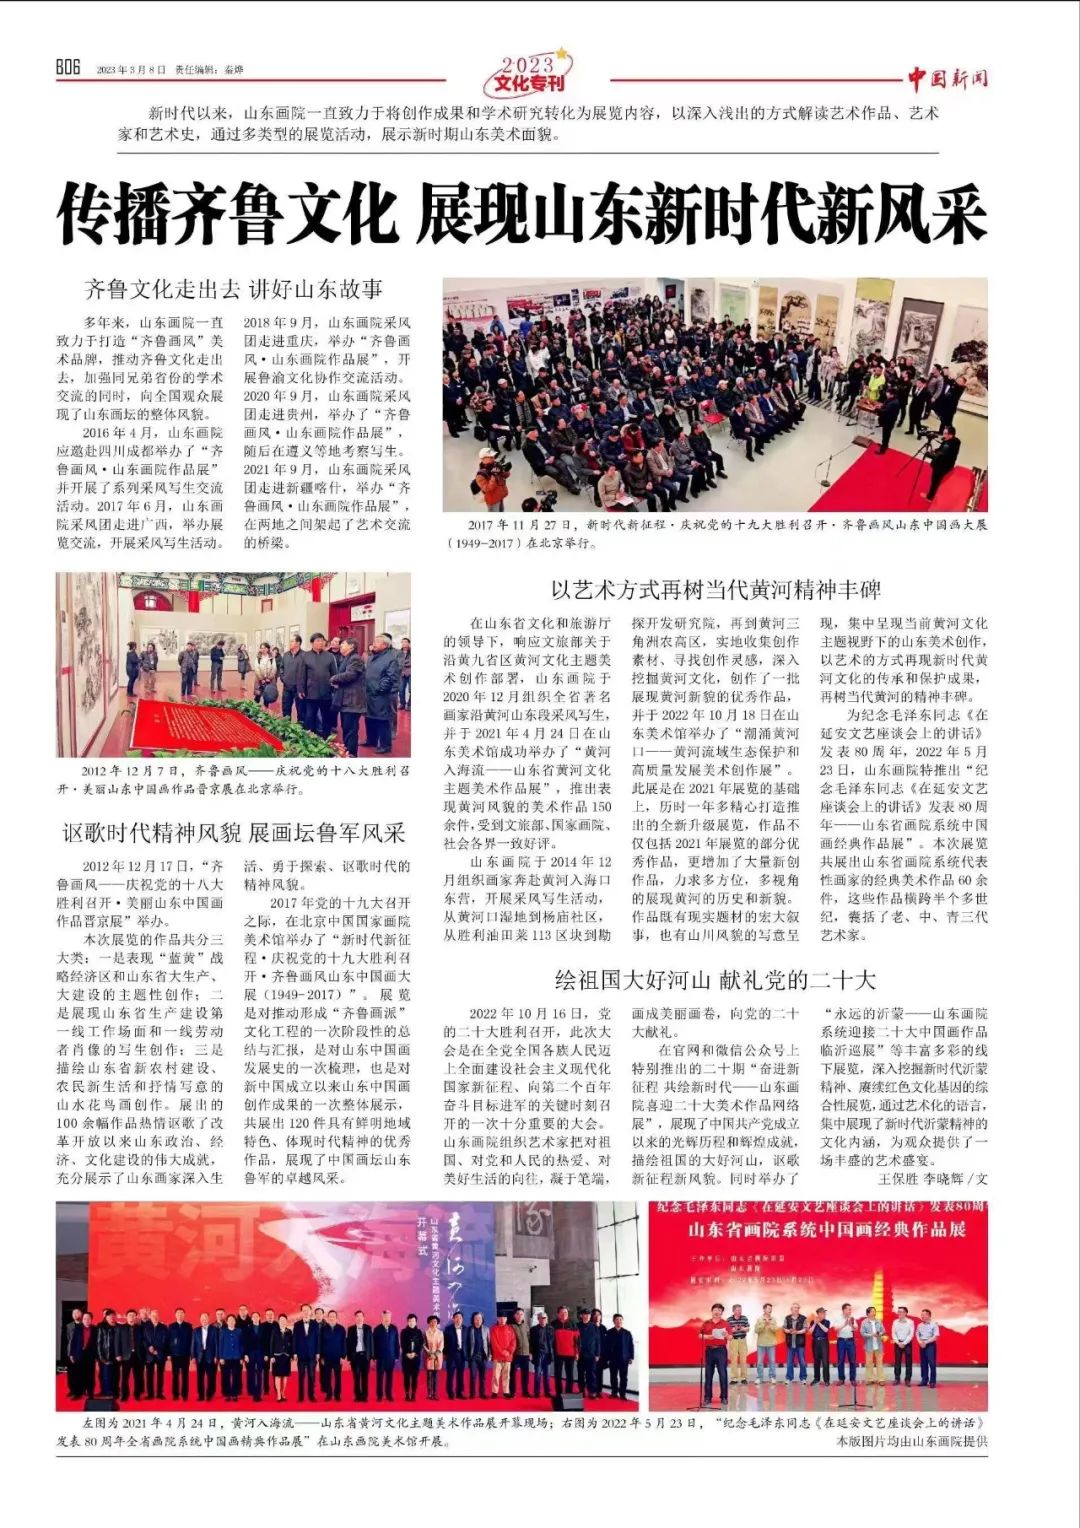 关注两会｜《中国新闻》八整版专题推介“新时代的山东画院”